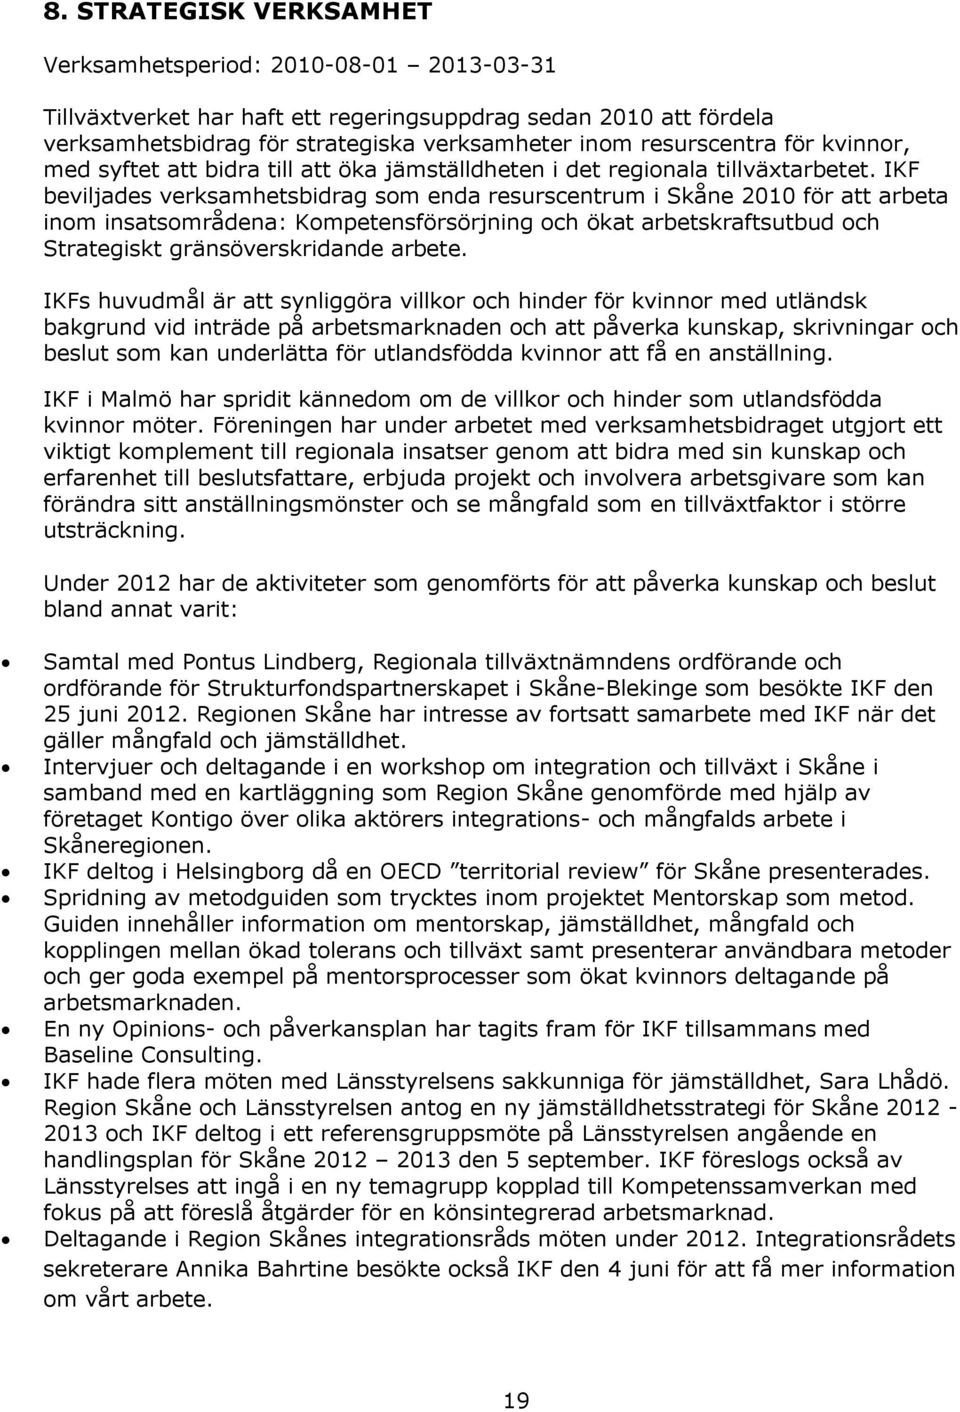 IKF beviljades verksamhetsbidrag som enda resurscentrum i Skåne 2010 för att arbeta inom insatsområdena: Kompetensförsörjning och ökat arbetskraftsutbud och Strategiskt gränsöverskridande arbete.